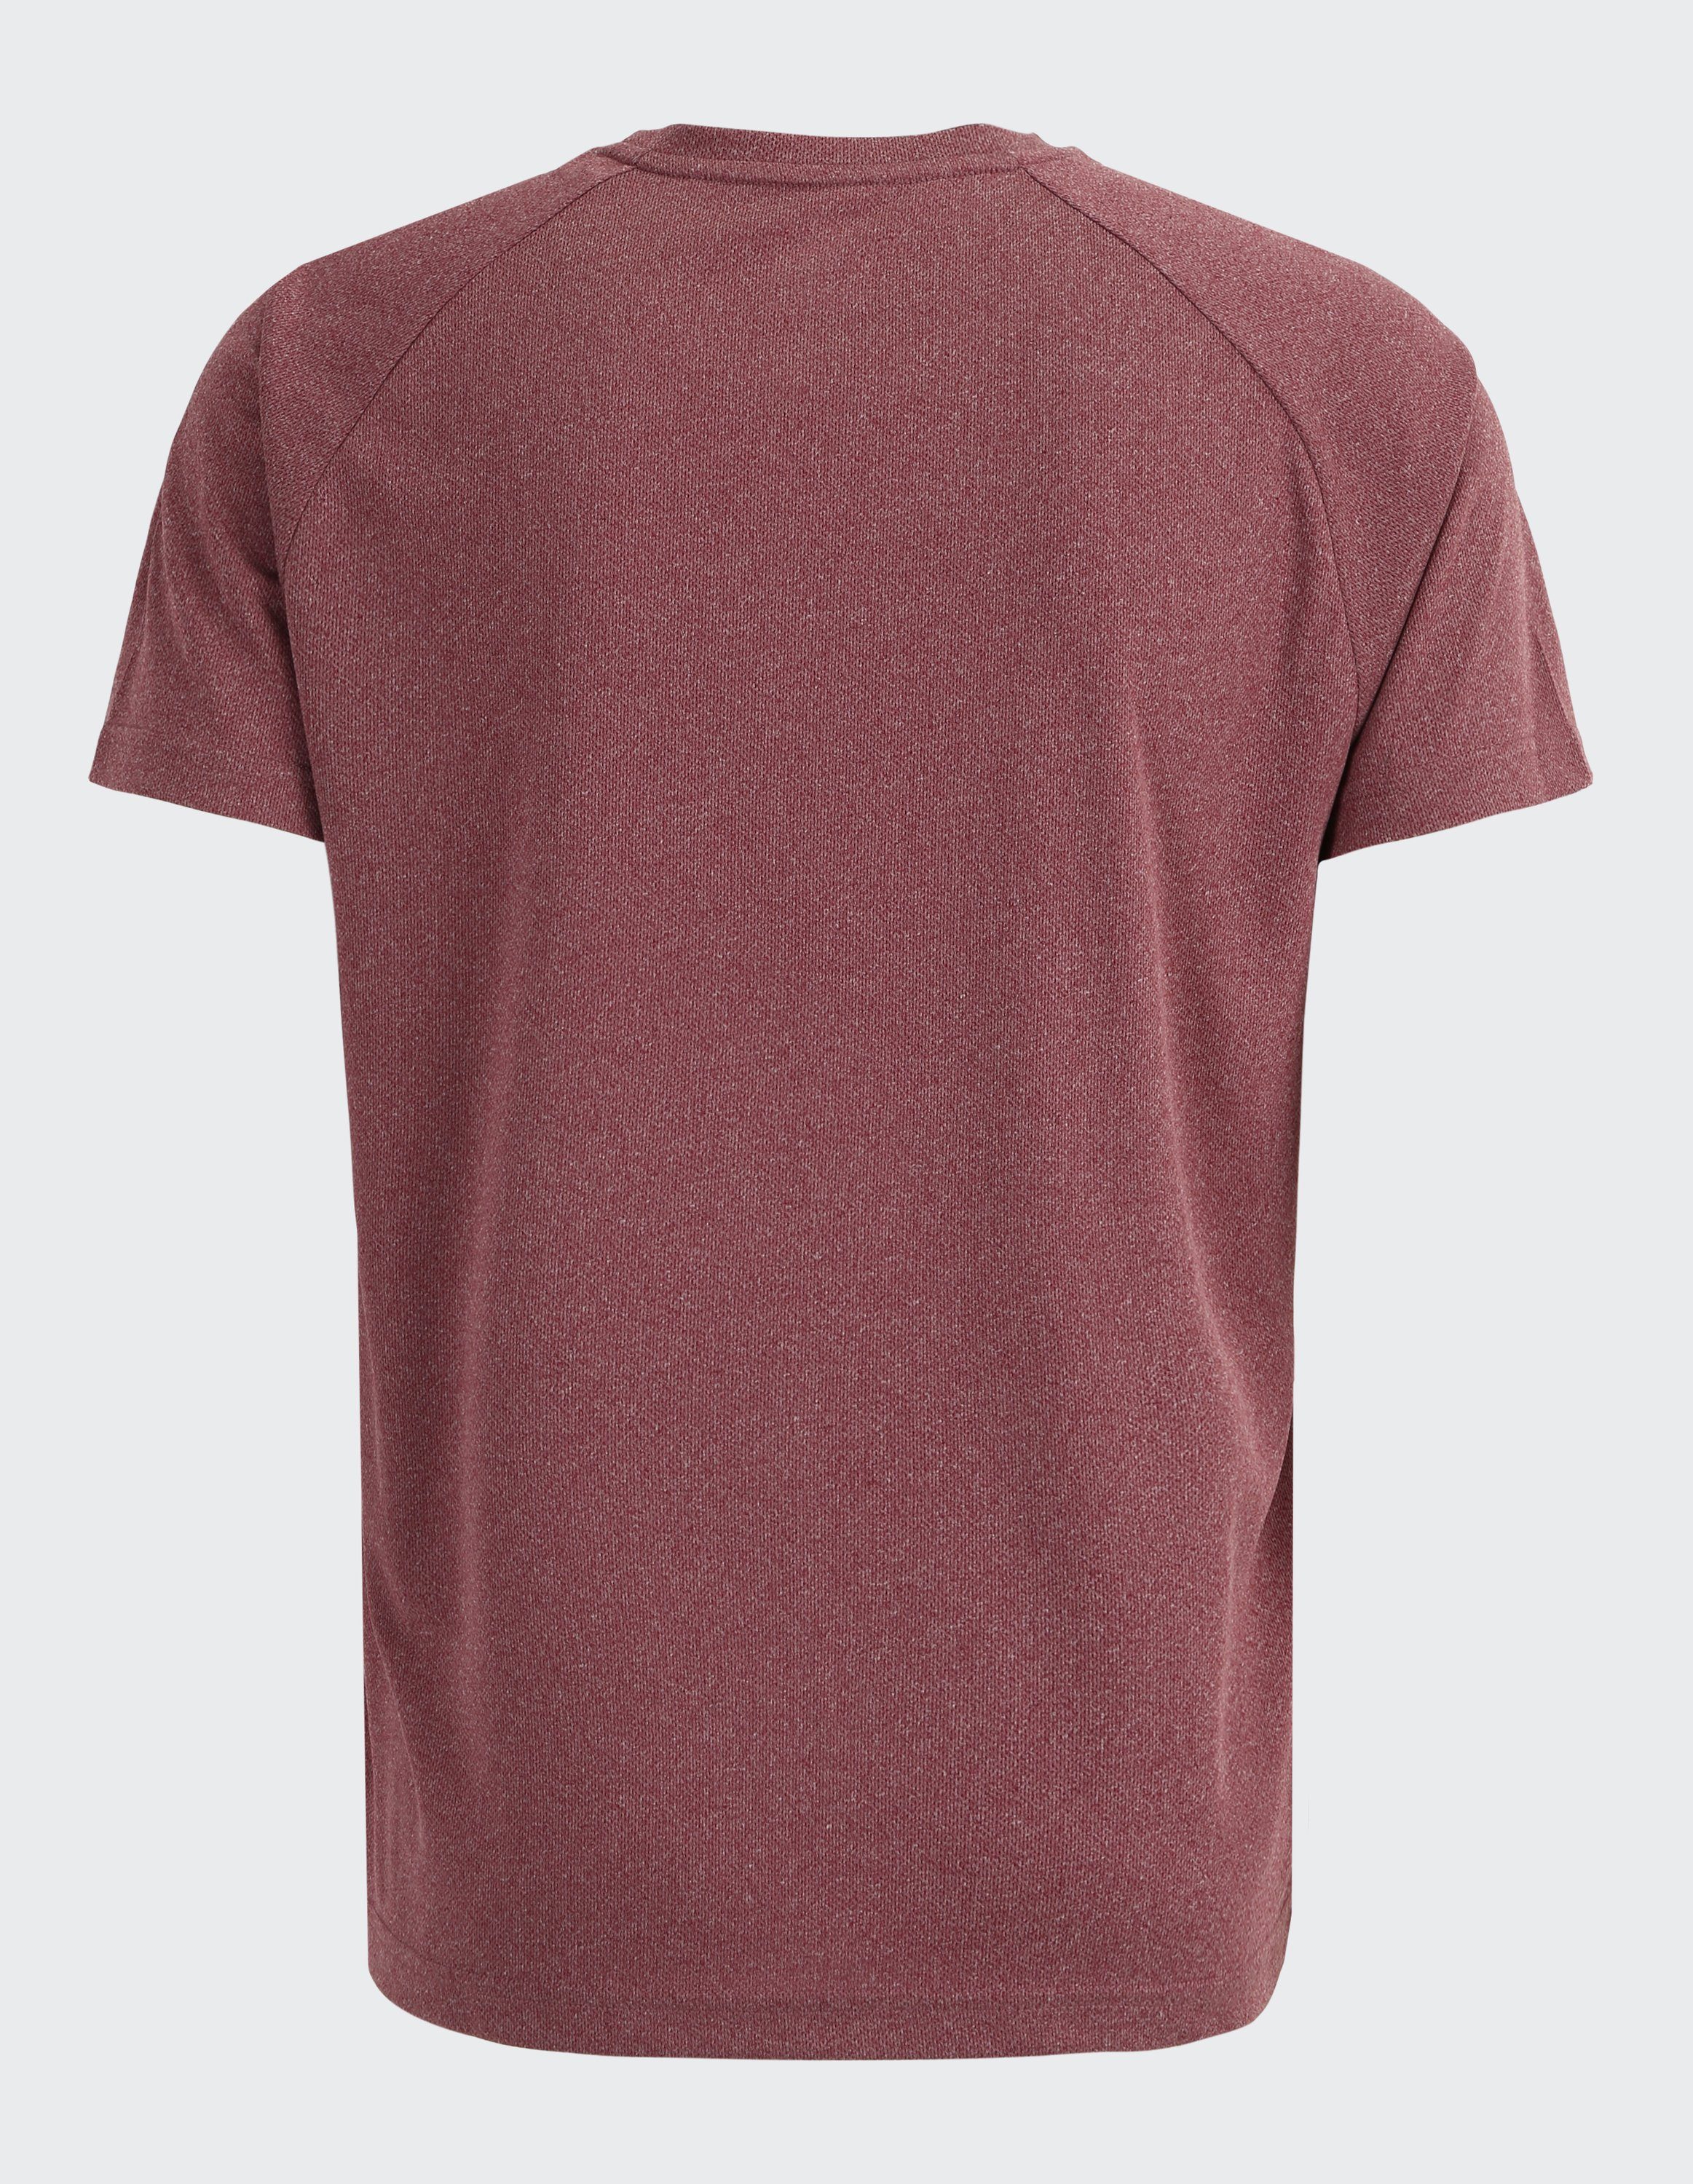 Joy Sportswear T-Shirt TINO T-Shirt redwood melange